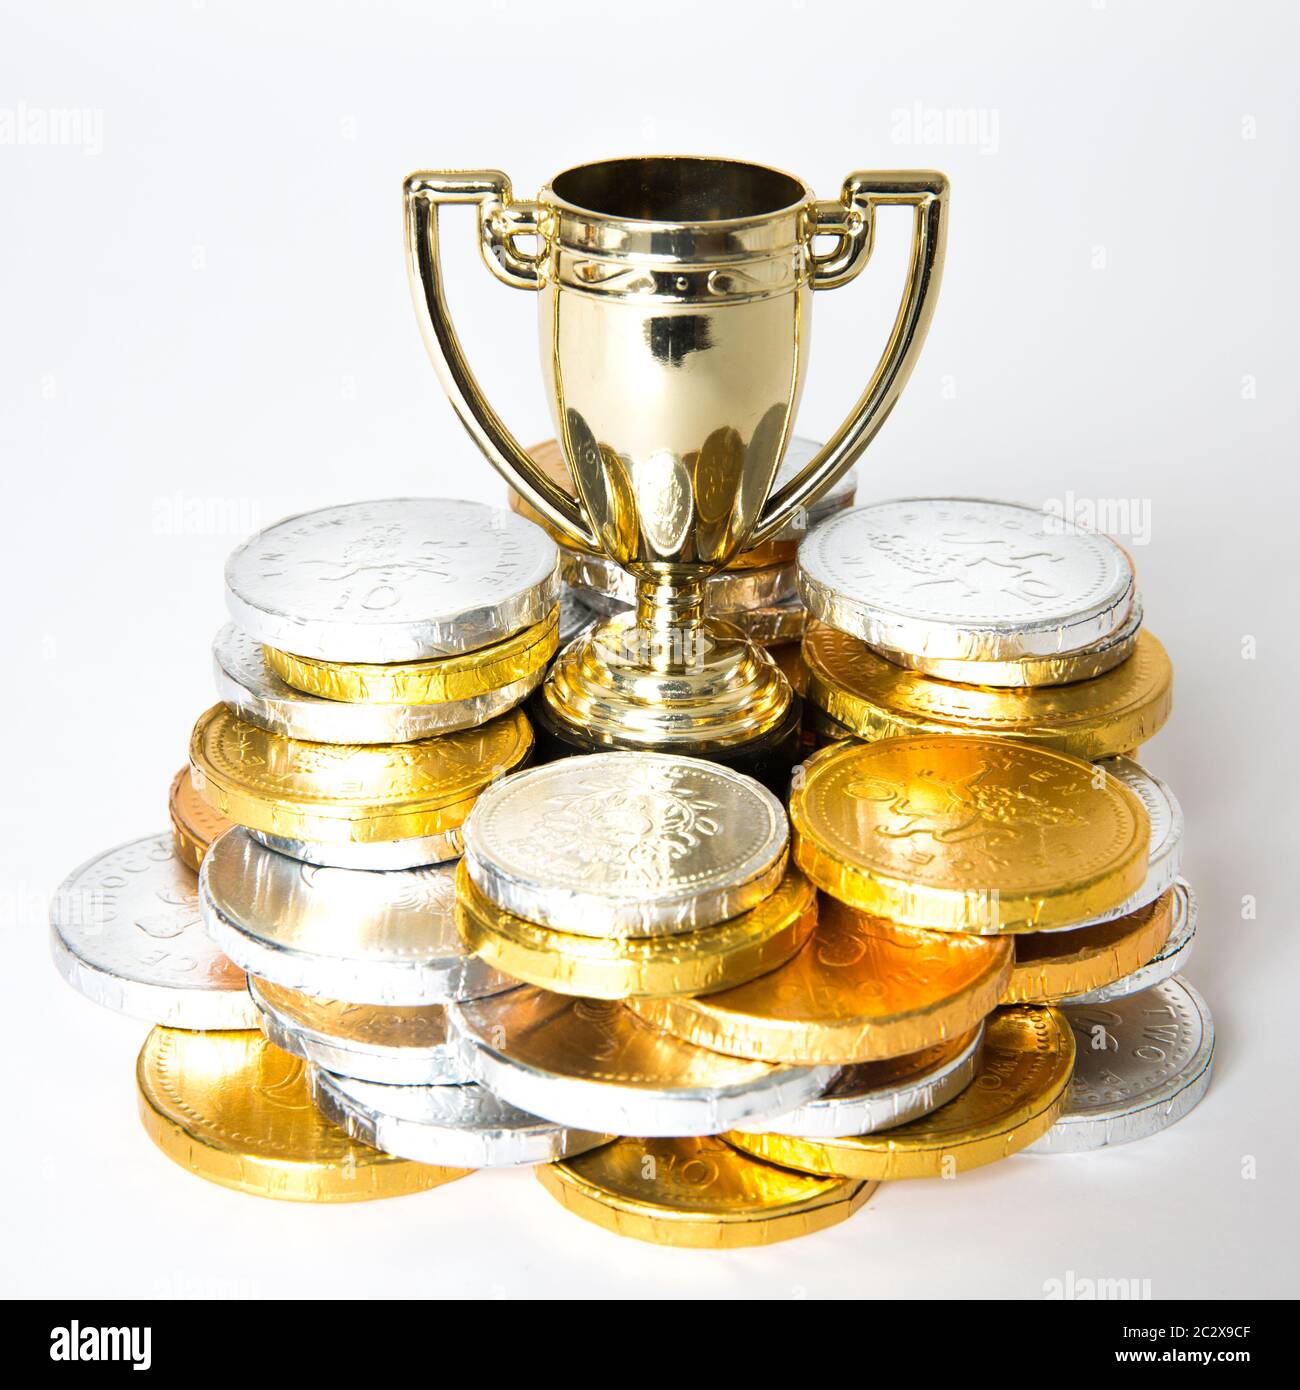 Un concept de réussite ou de victoire avec un trophée d'or ou une tasse entourée de pièces d'or et d'argent sous forme de prix Banque D'Images